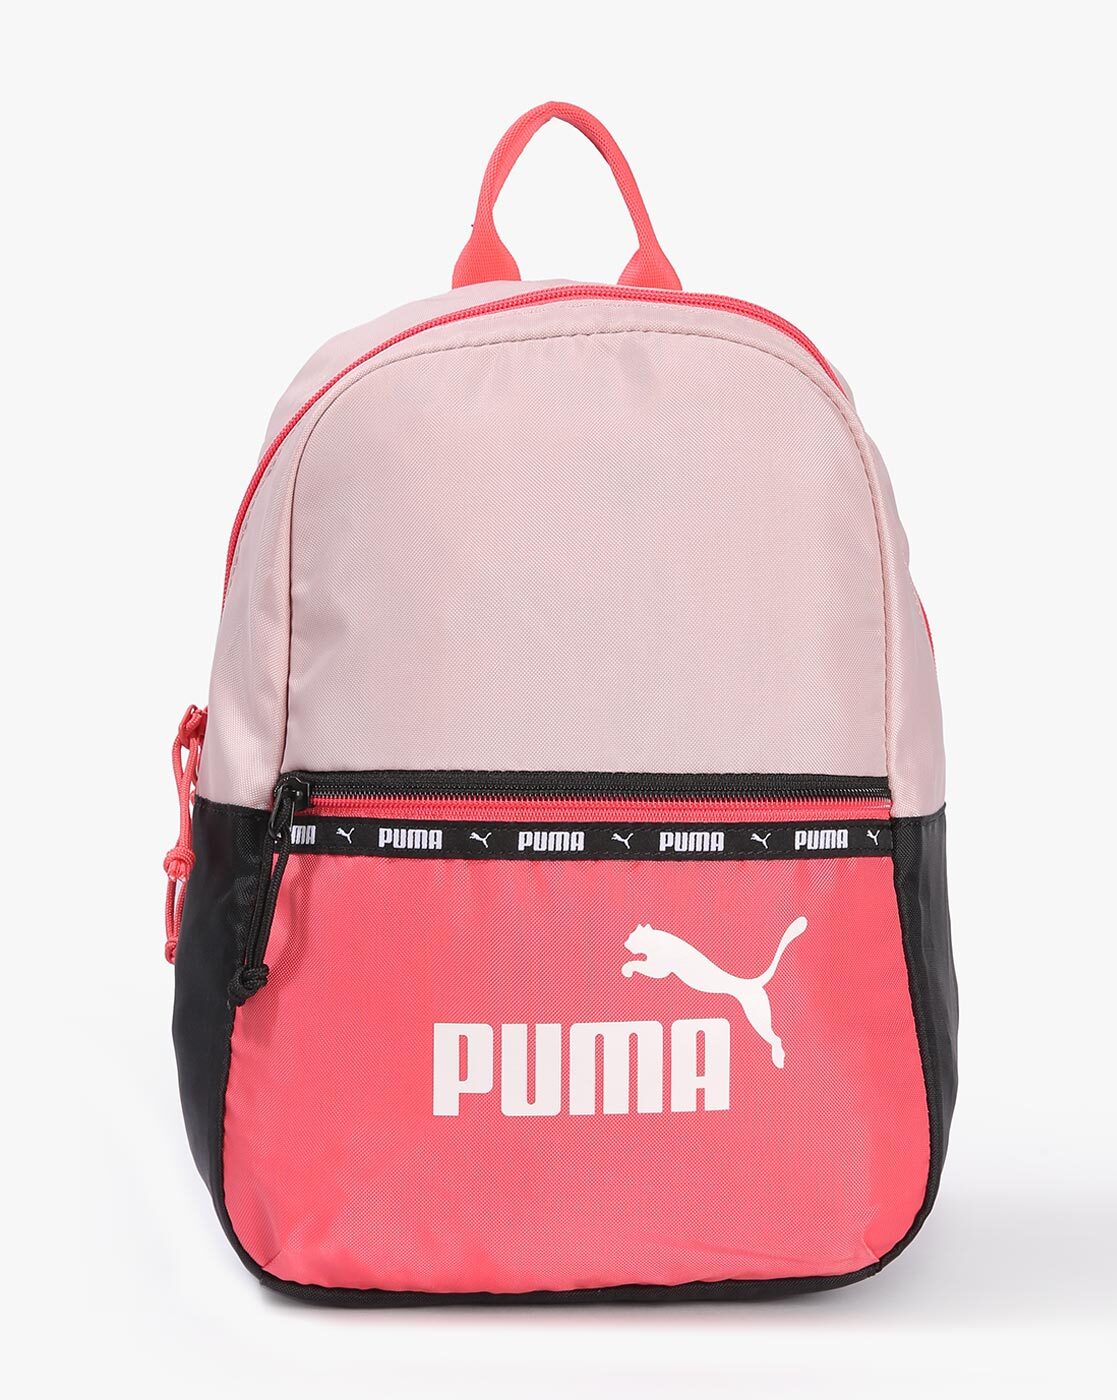 PUMA Pink Shoulder Bags for Women | Mercari